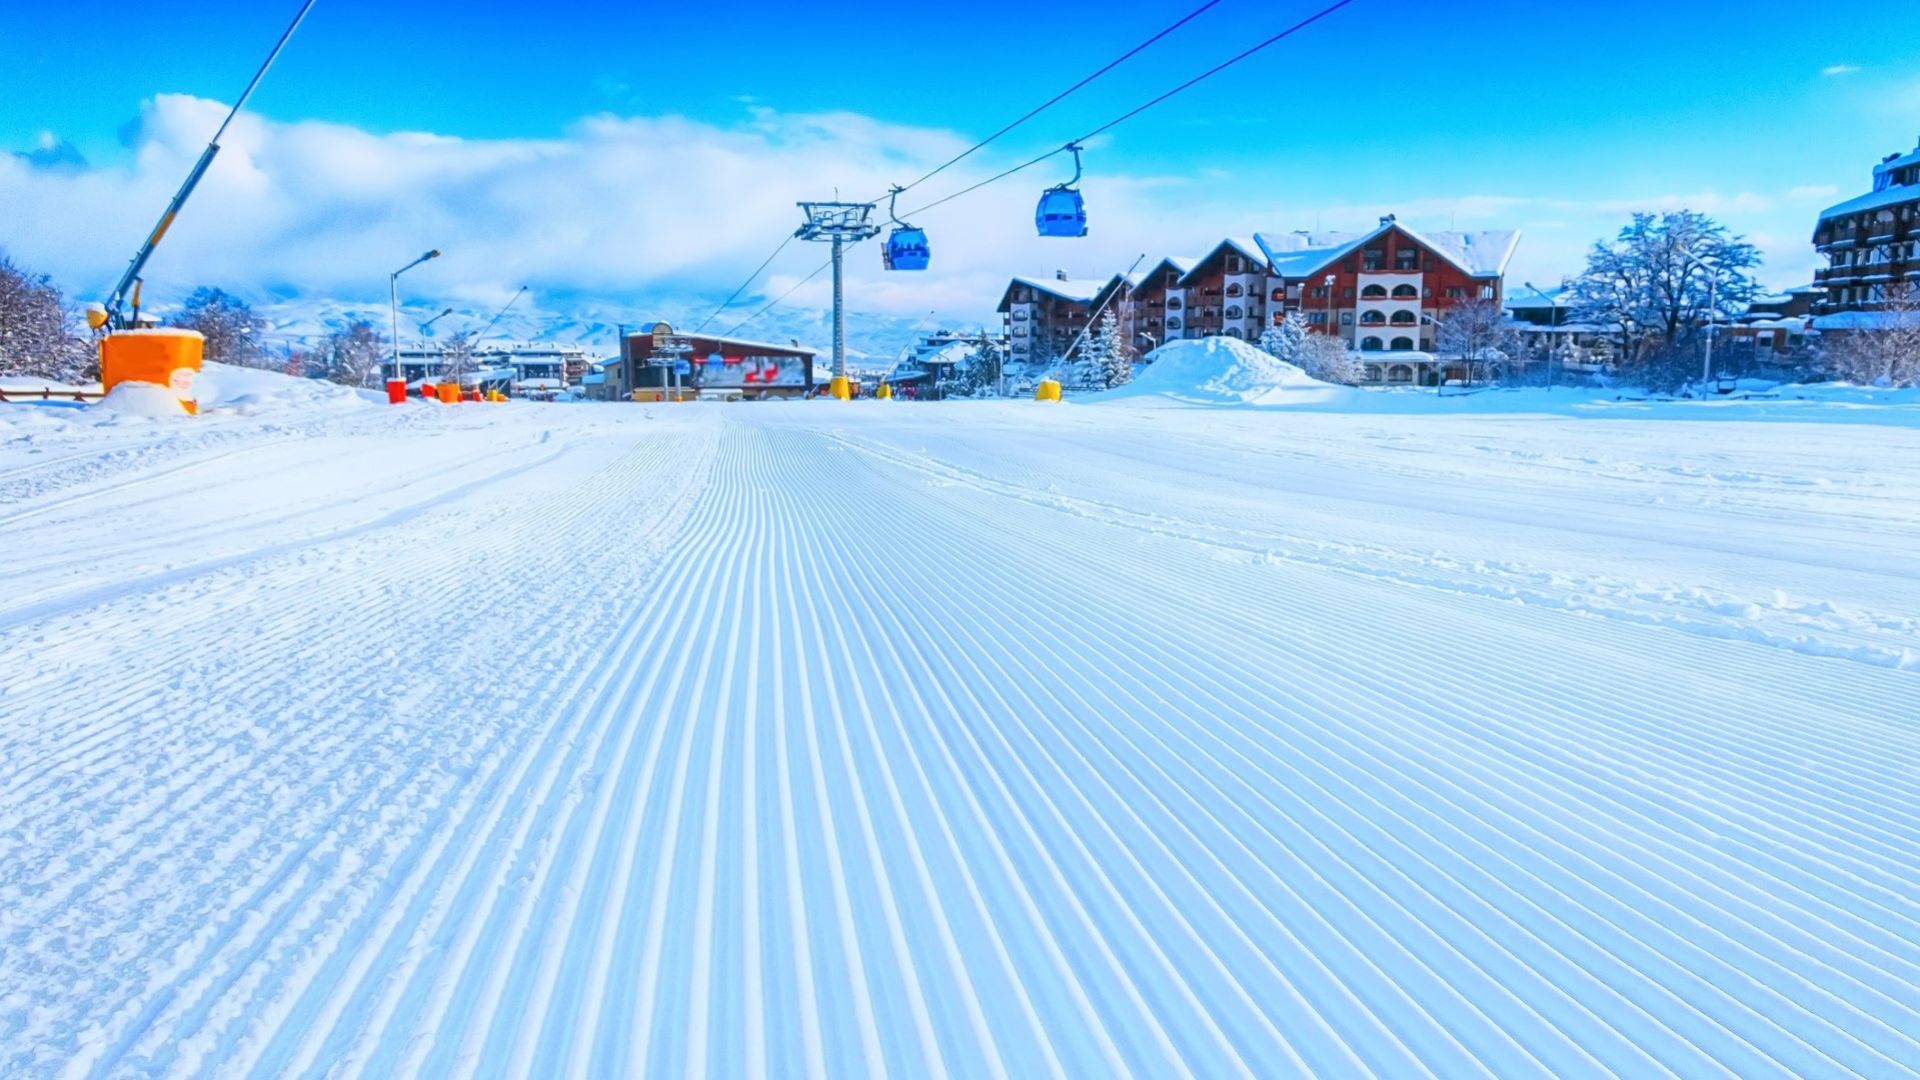 Банско е обявен за най-добрия ски курорт в България и един от най-добрите в Европа